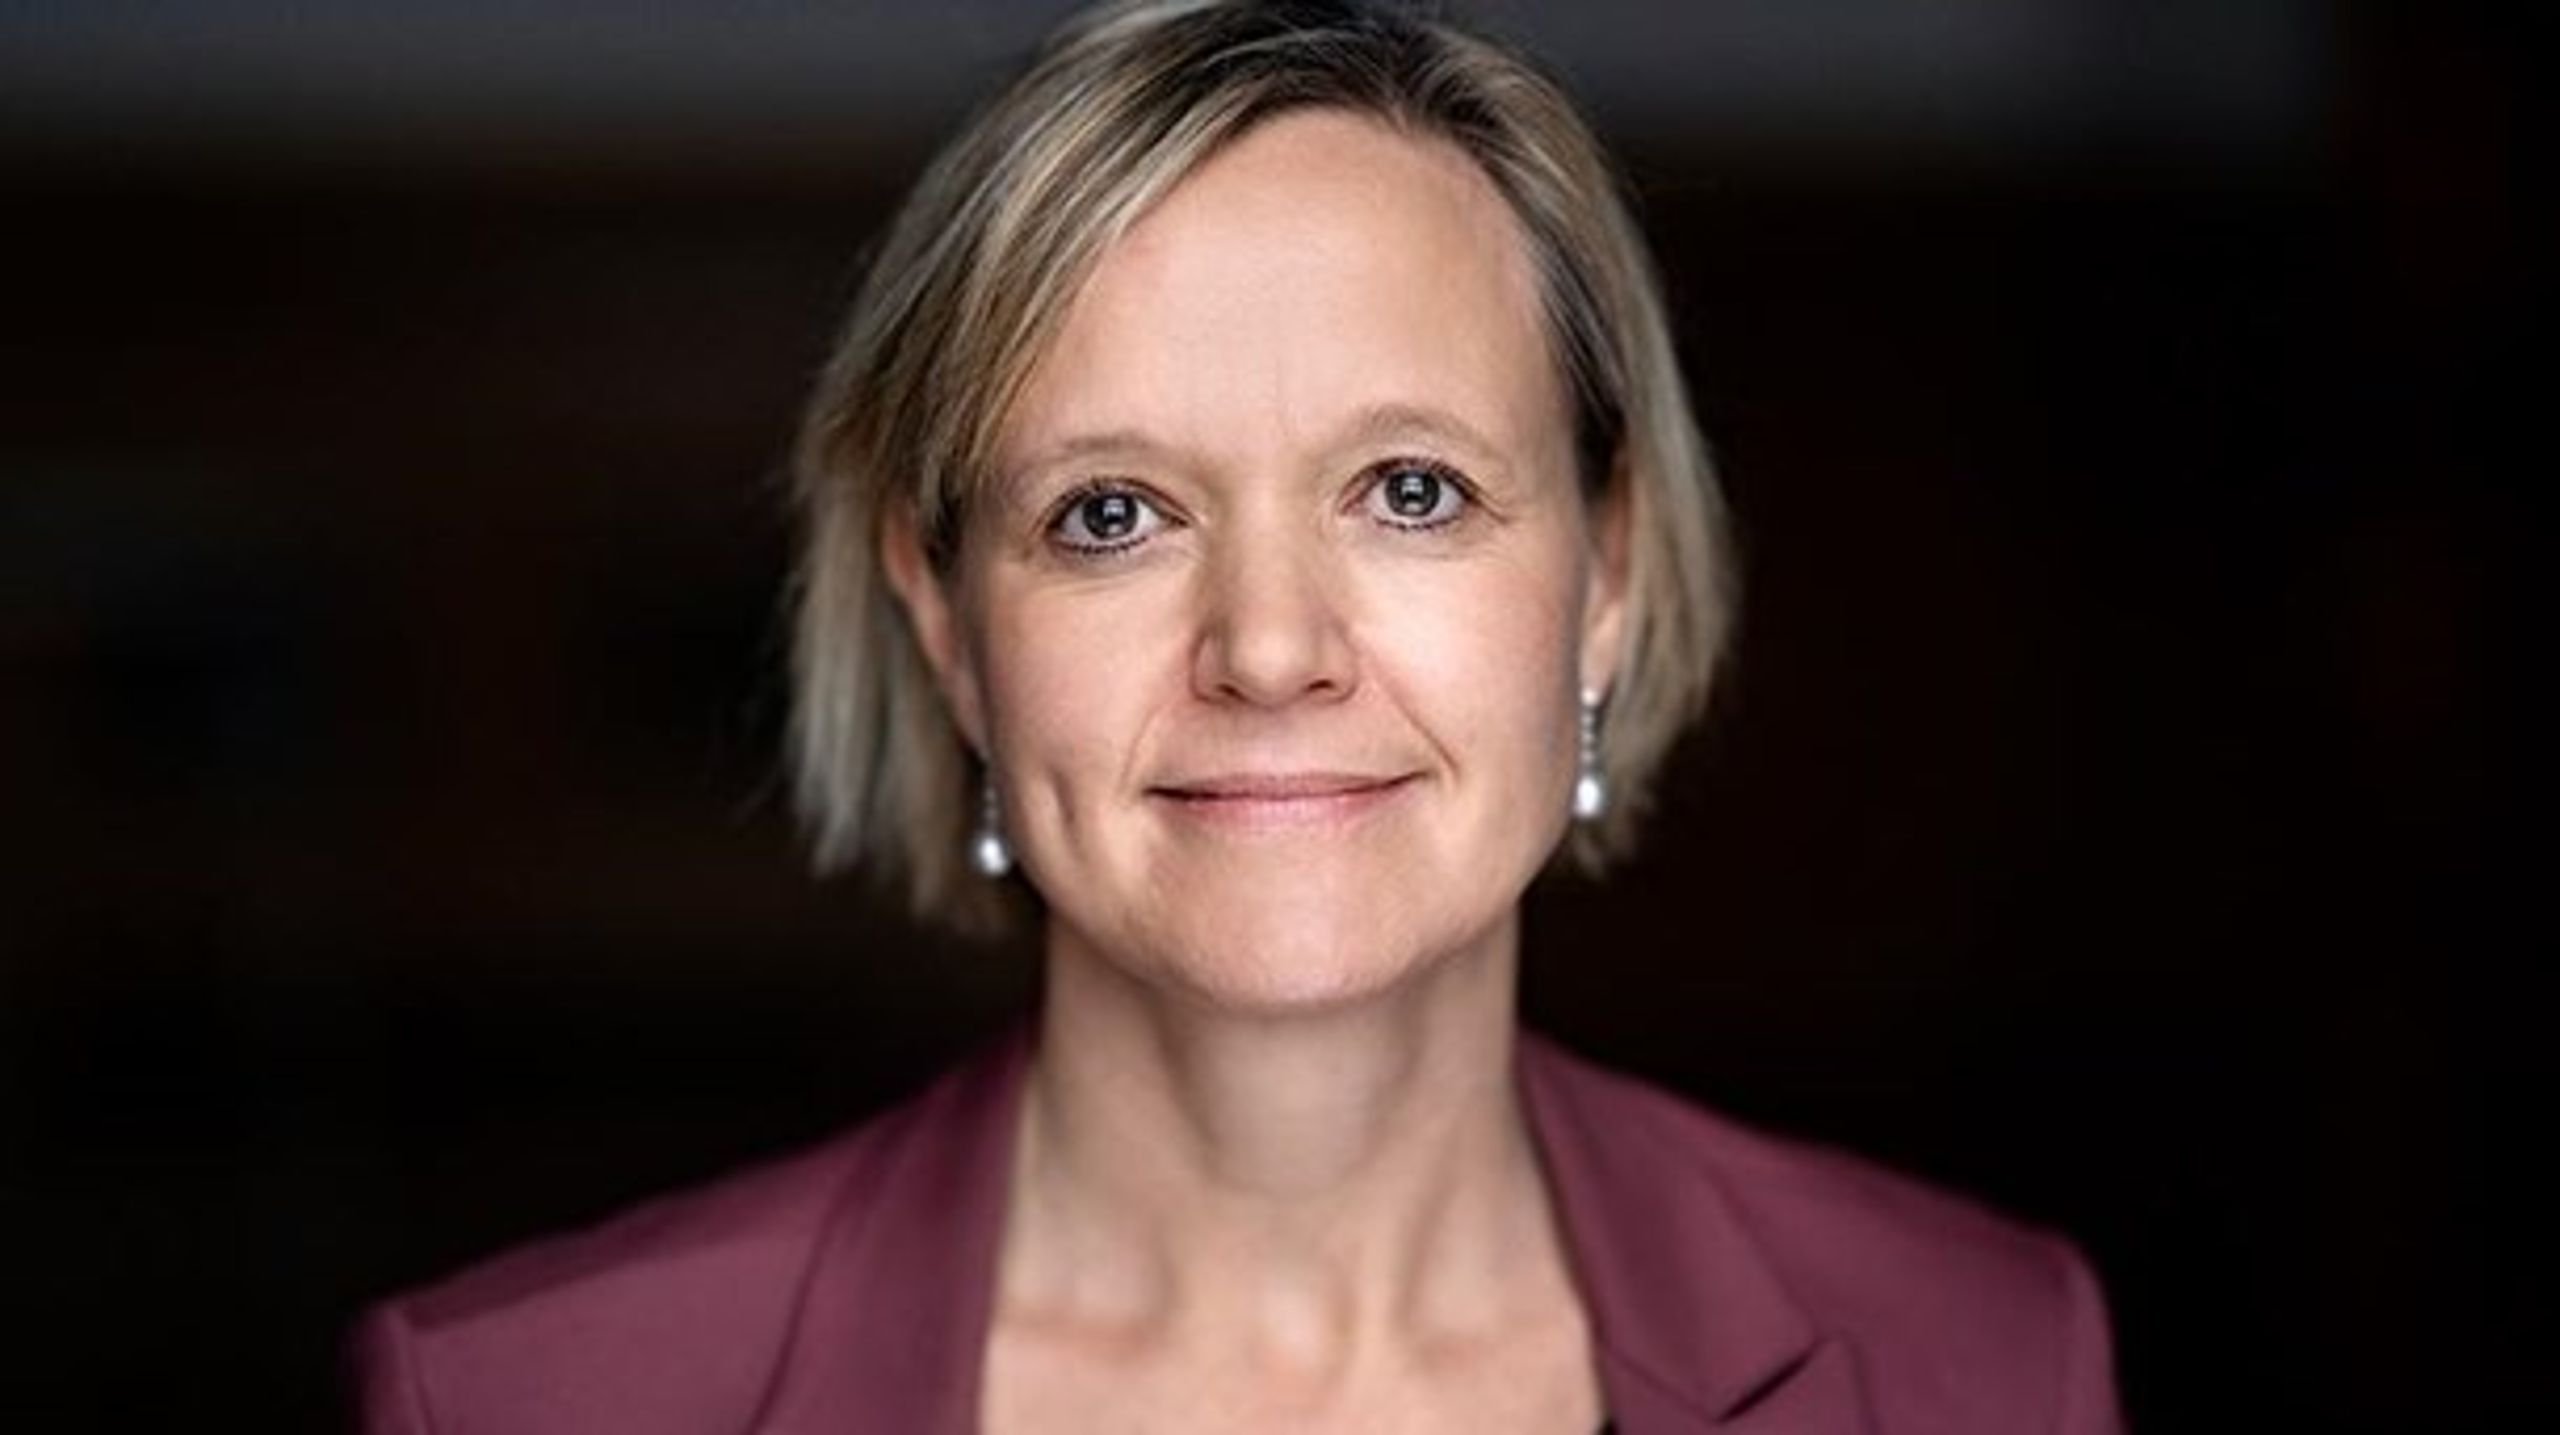 Når ledige minoritetskvinder giver udtryk for, at de presses til ikke at stå til rådighed for arbejdsmarkedet, er det ikke et udtryk for smalltalk hos frisøren, skriver Cecilia Lonning-Skovgaard.